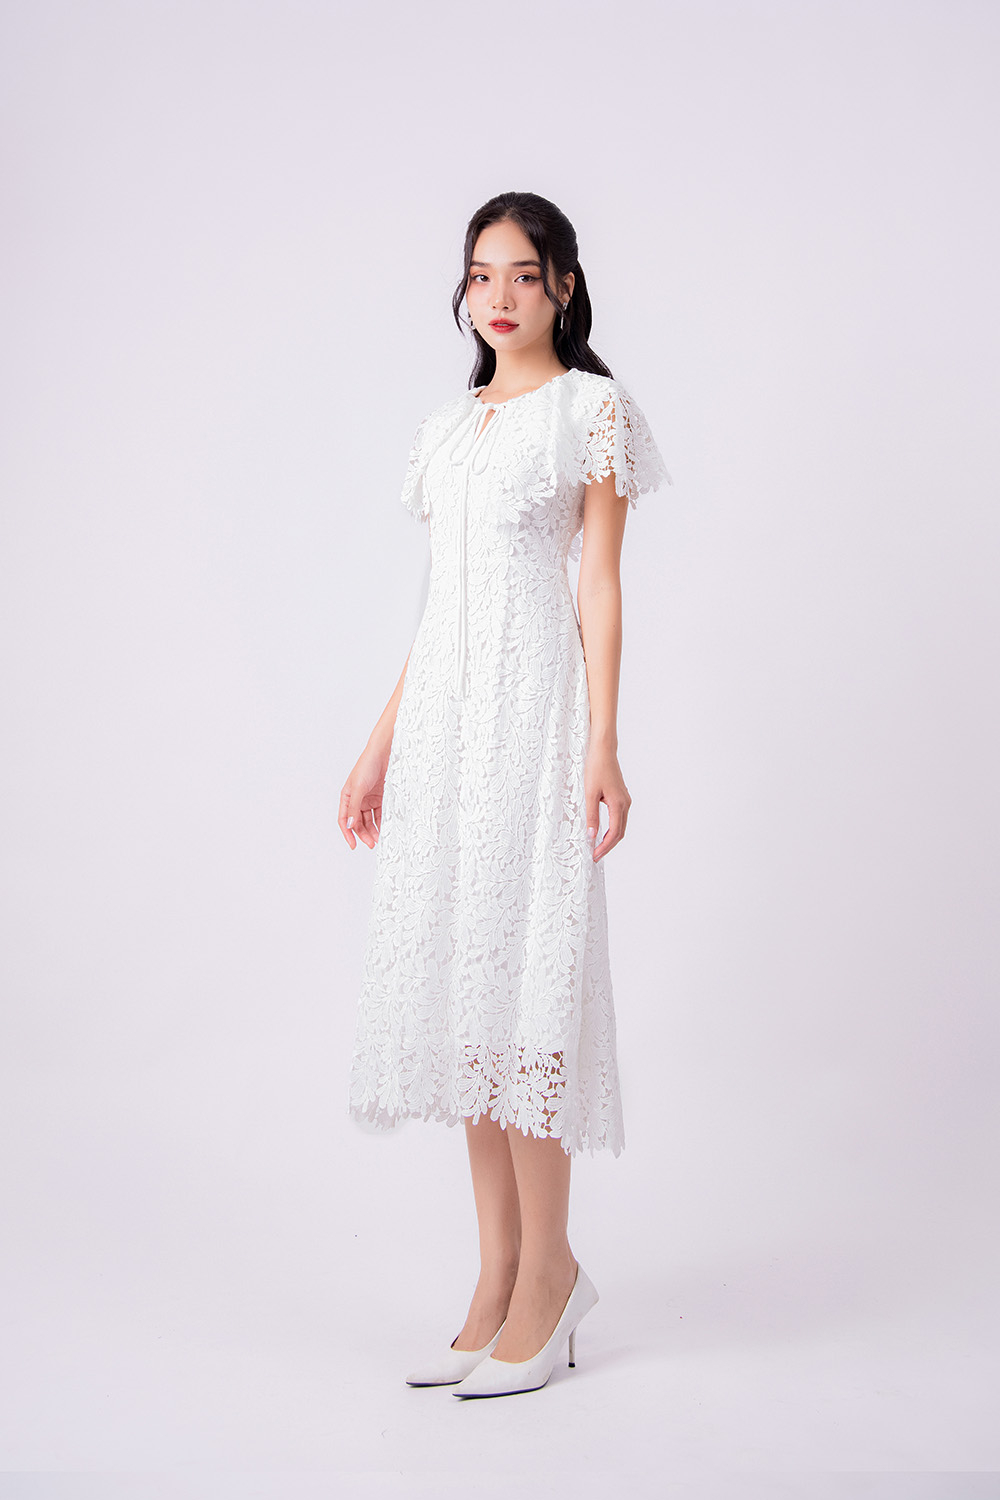 199 Mẫu Váy Đầm Xòe Đẹp Dự Tiệc Cưới Dễ Thương 2023 - Trang 2